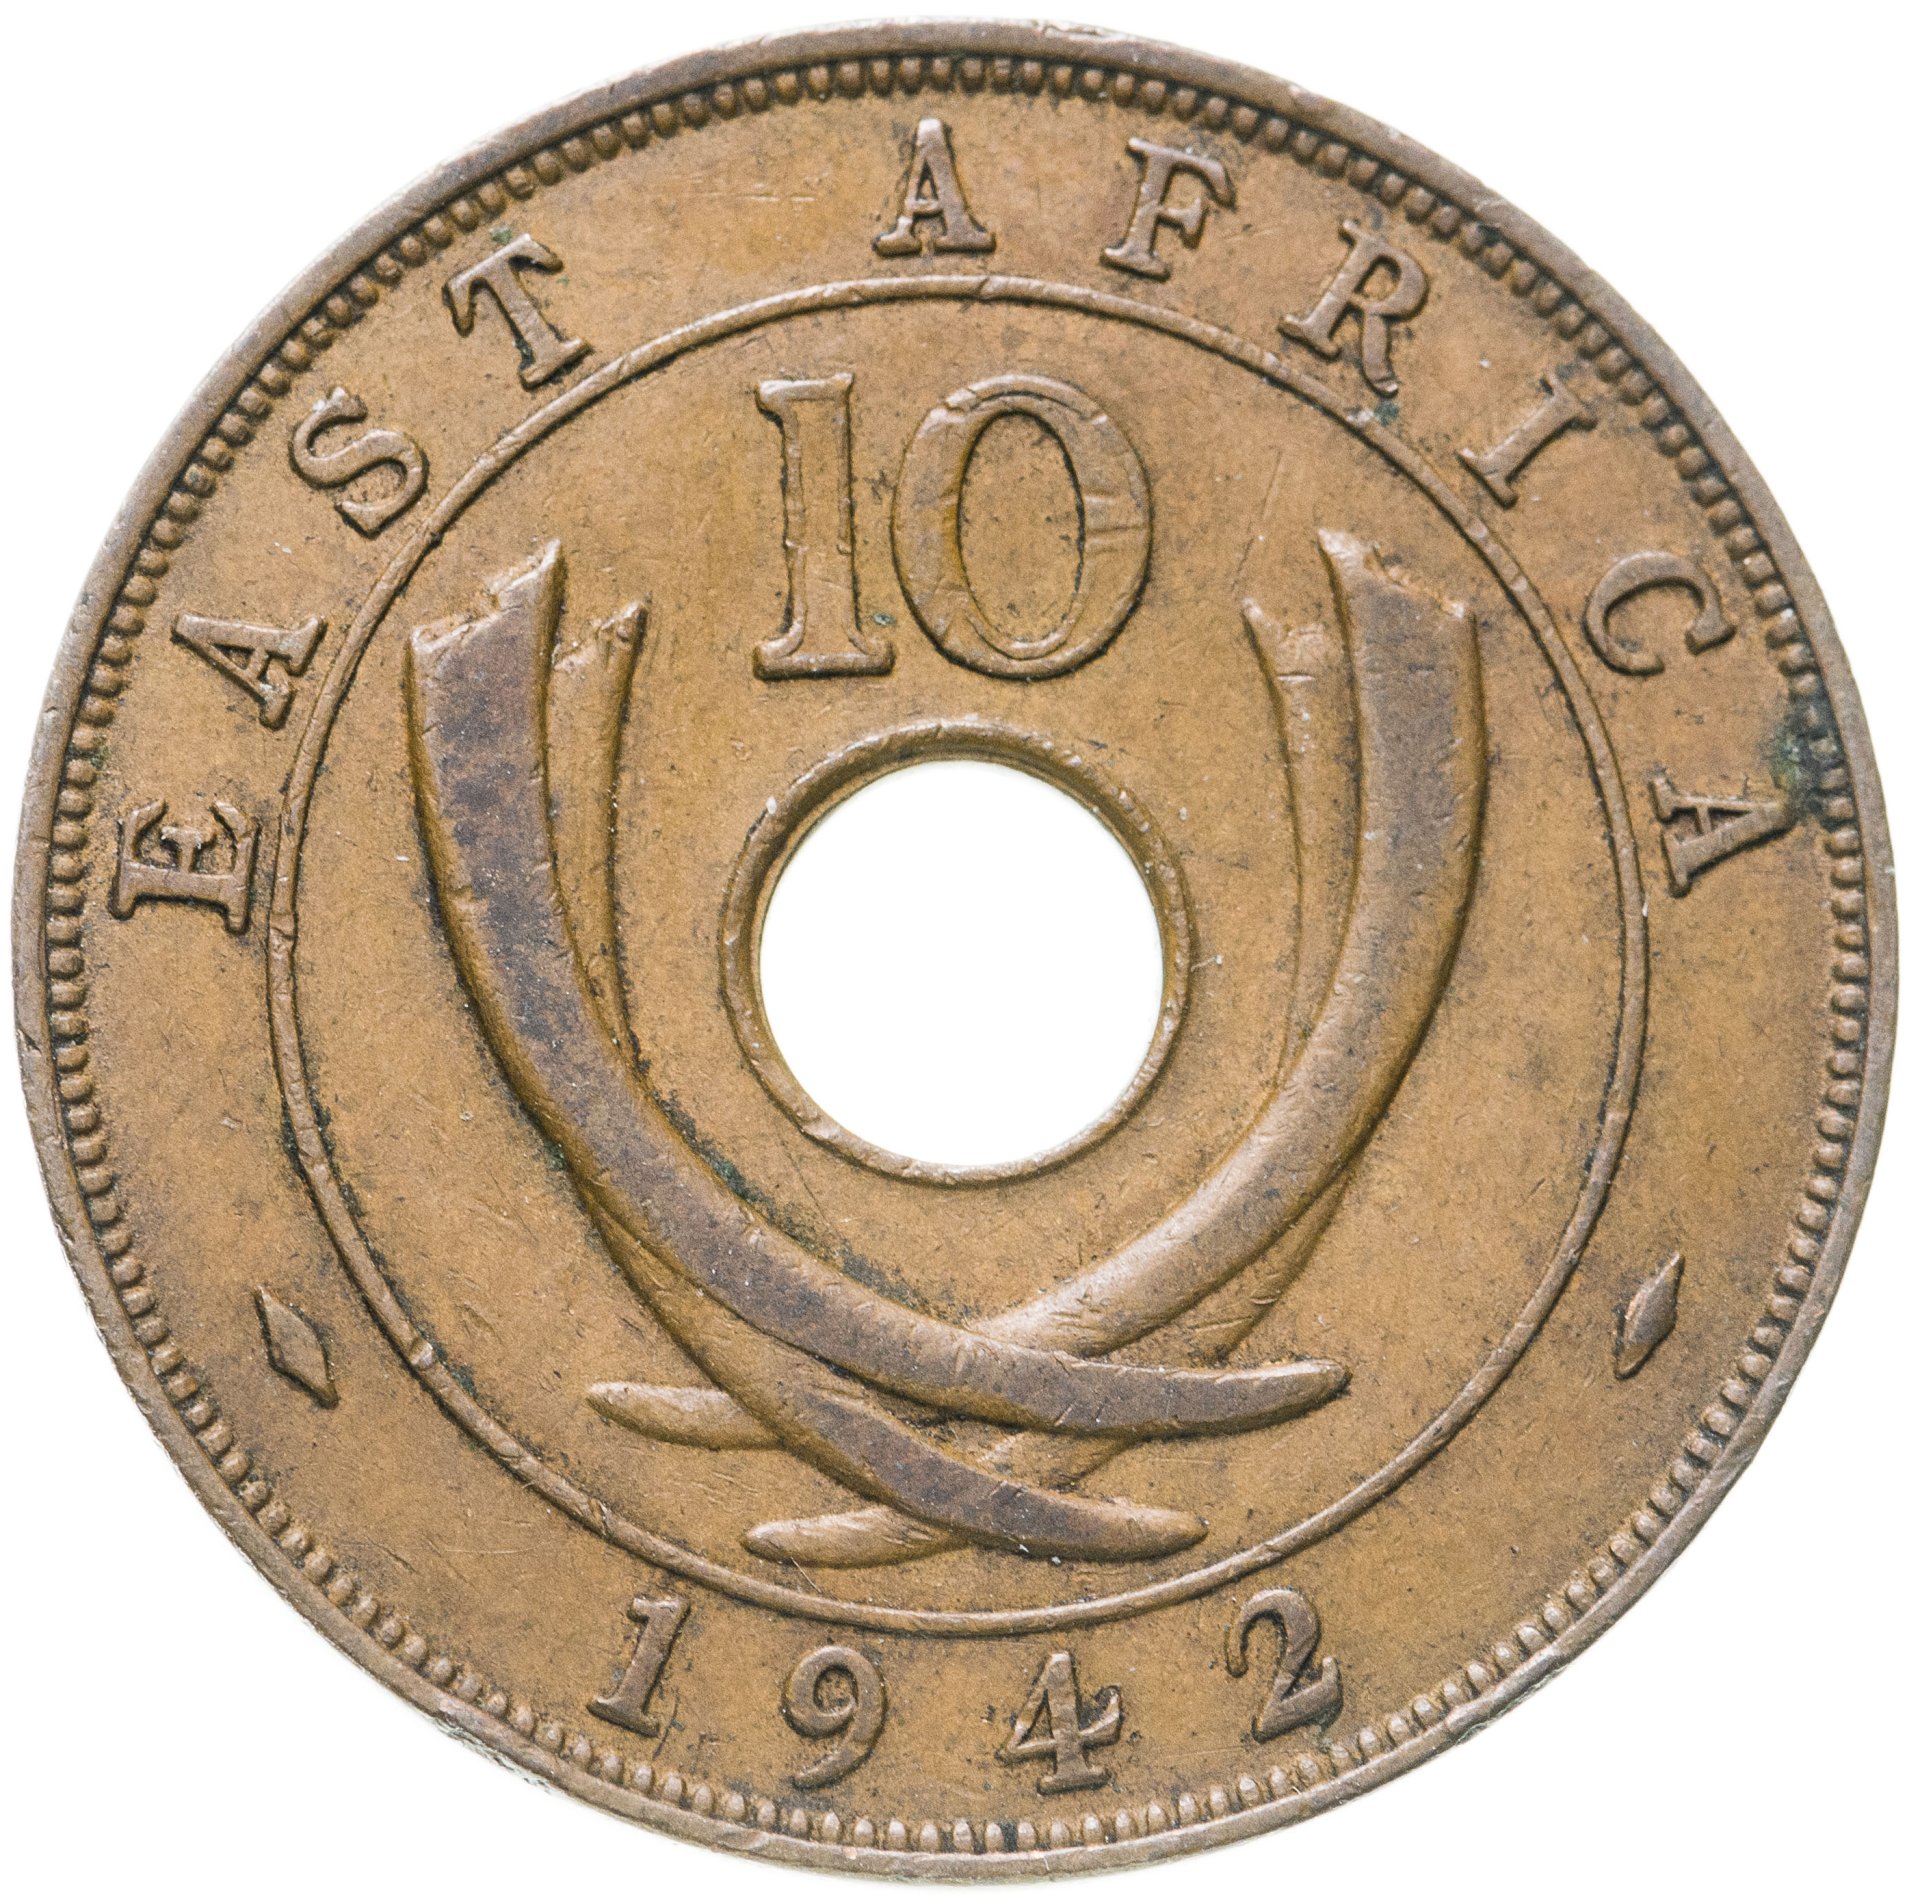 Africa 10. Британская Восточная Африка 10 центов 1913.